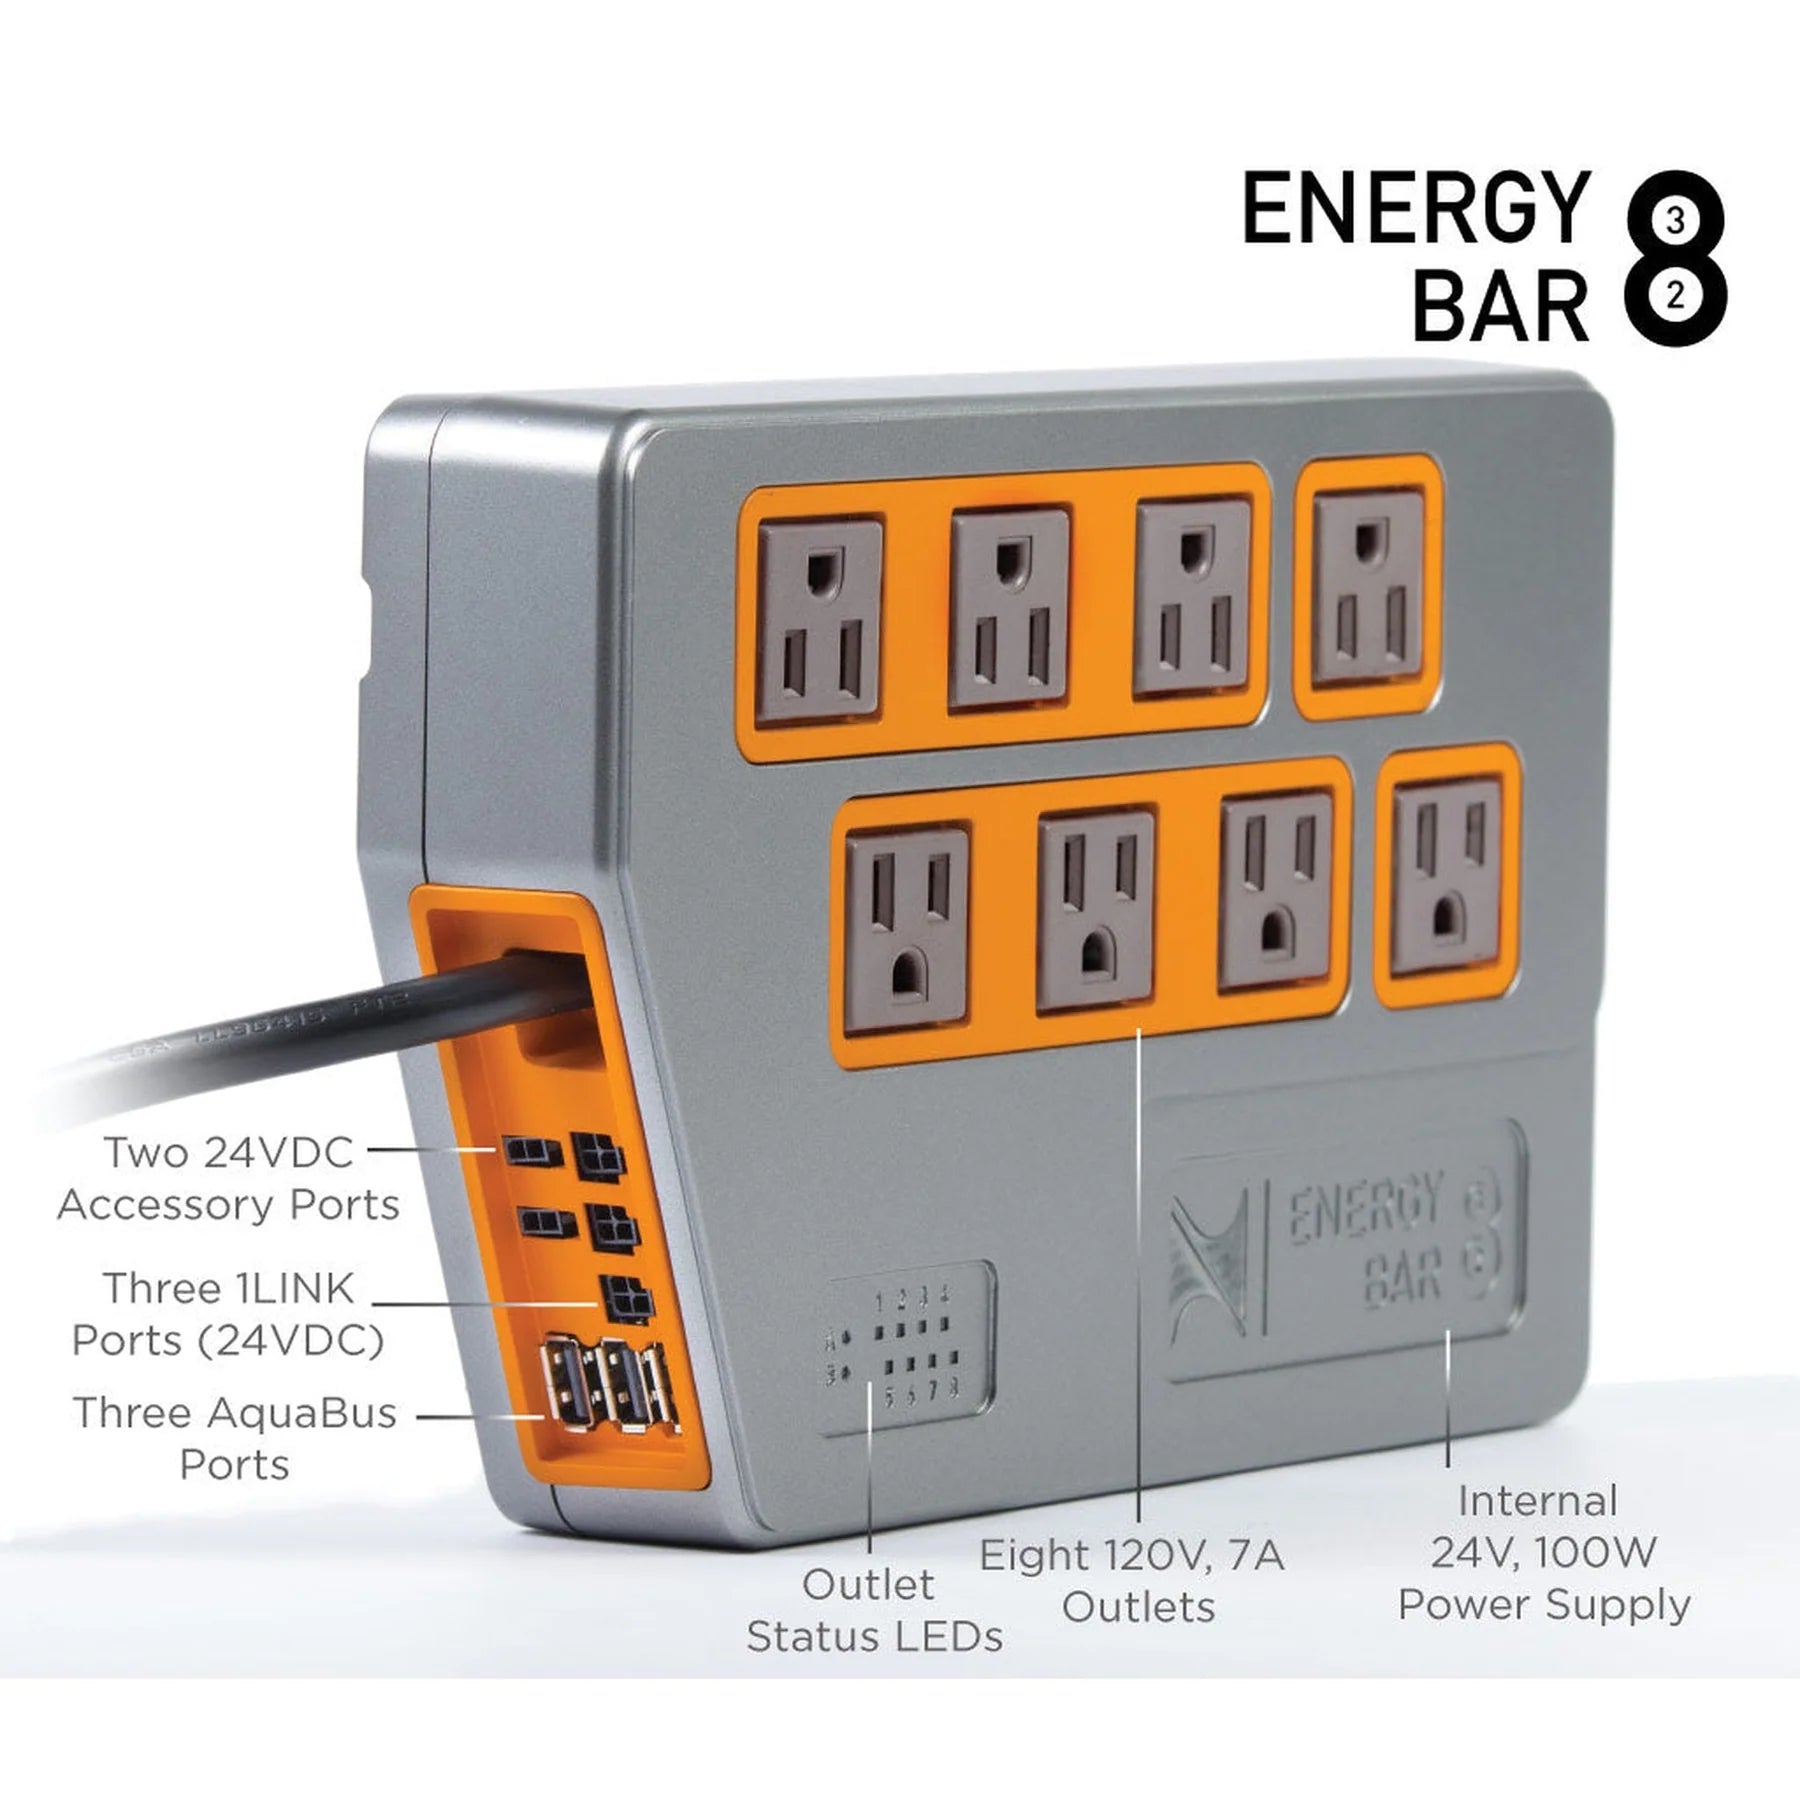 Energy Bar 832